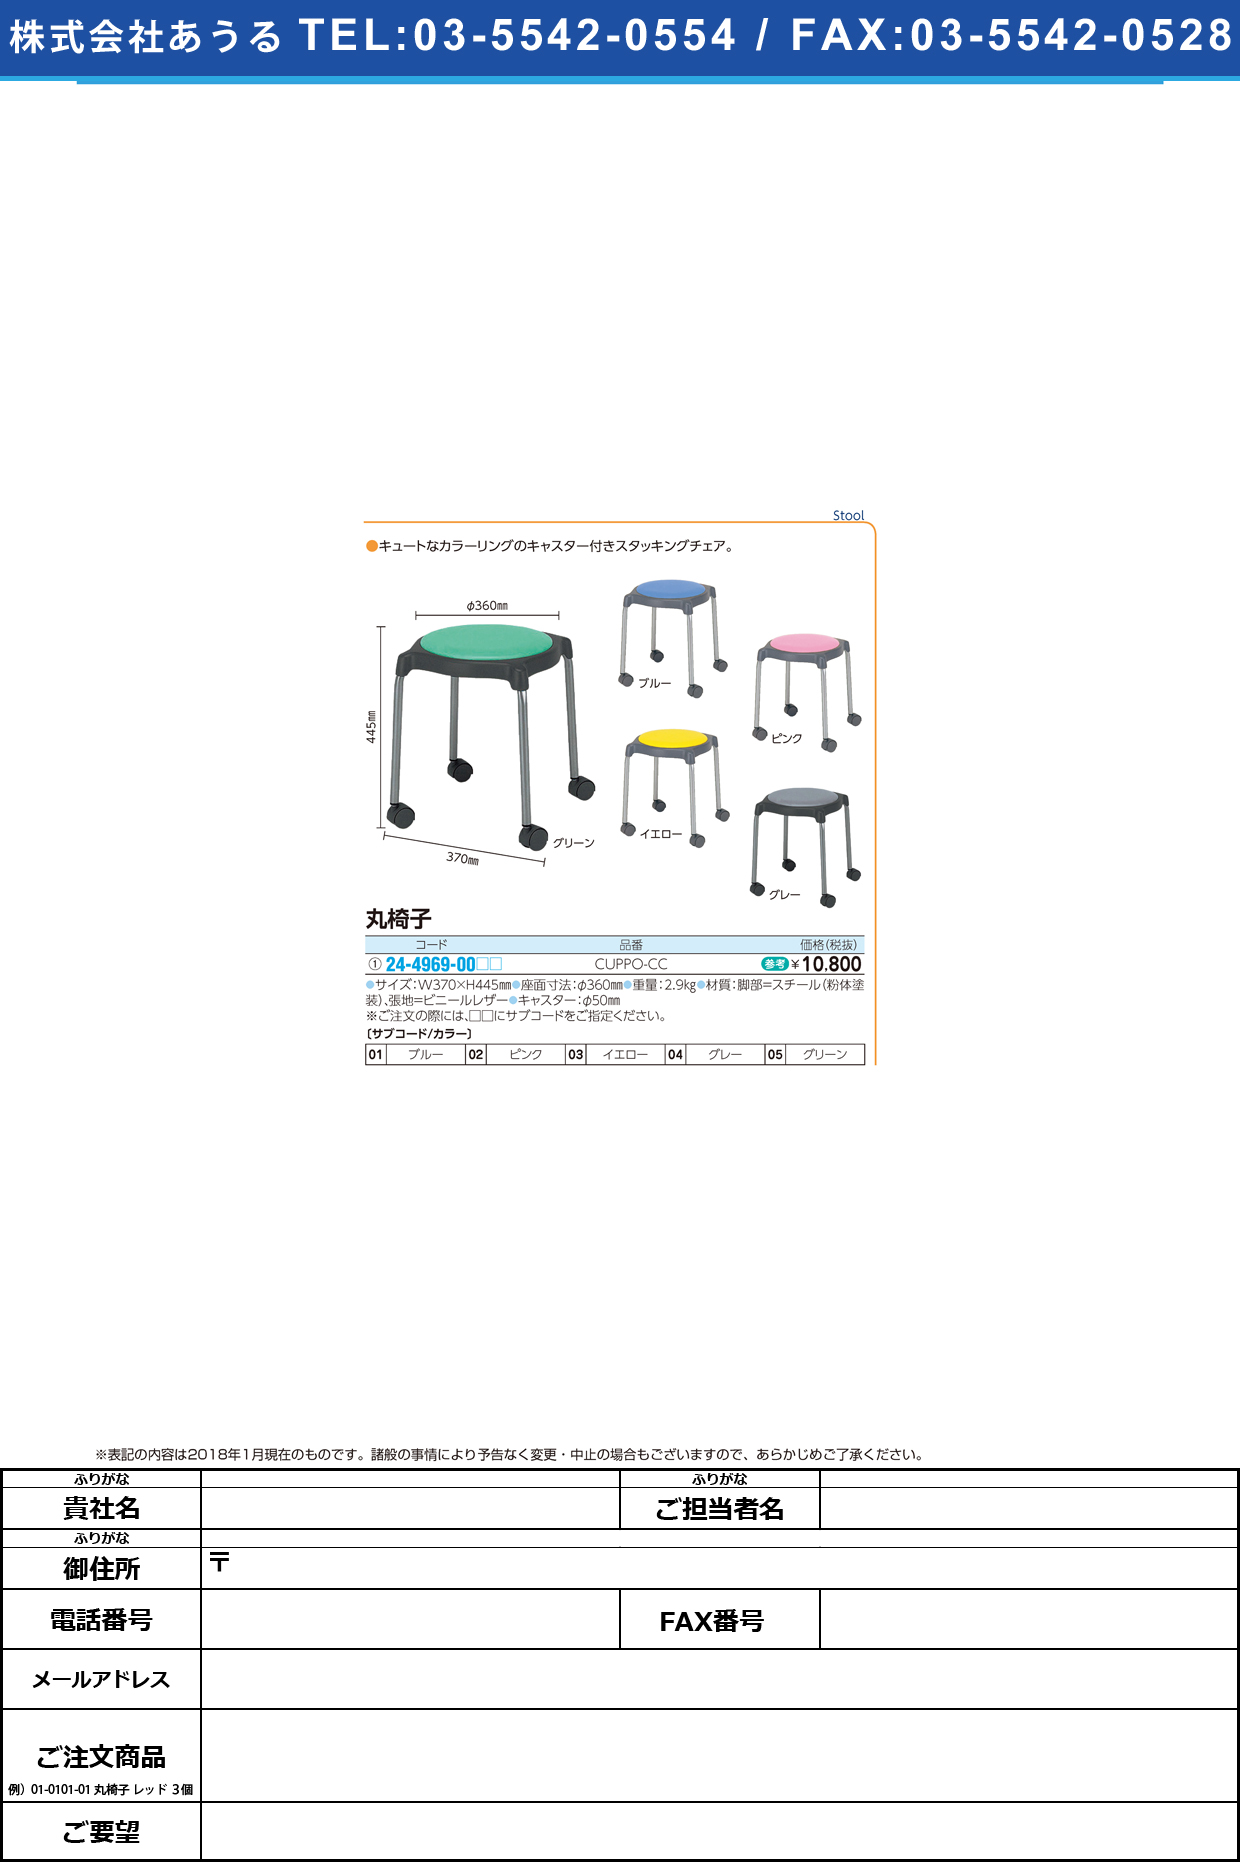 (24-4969-00)丸椅子 CUPPO-CC ﾏﾙｲｽ ピンク【1台単位】【2018年カタログ商品】